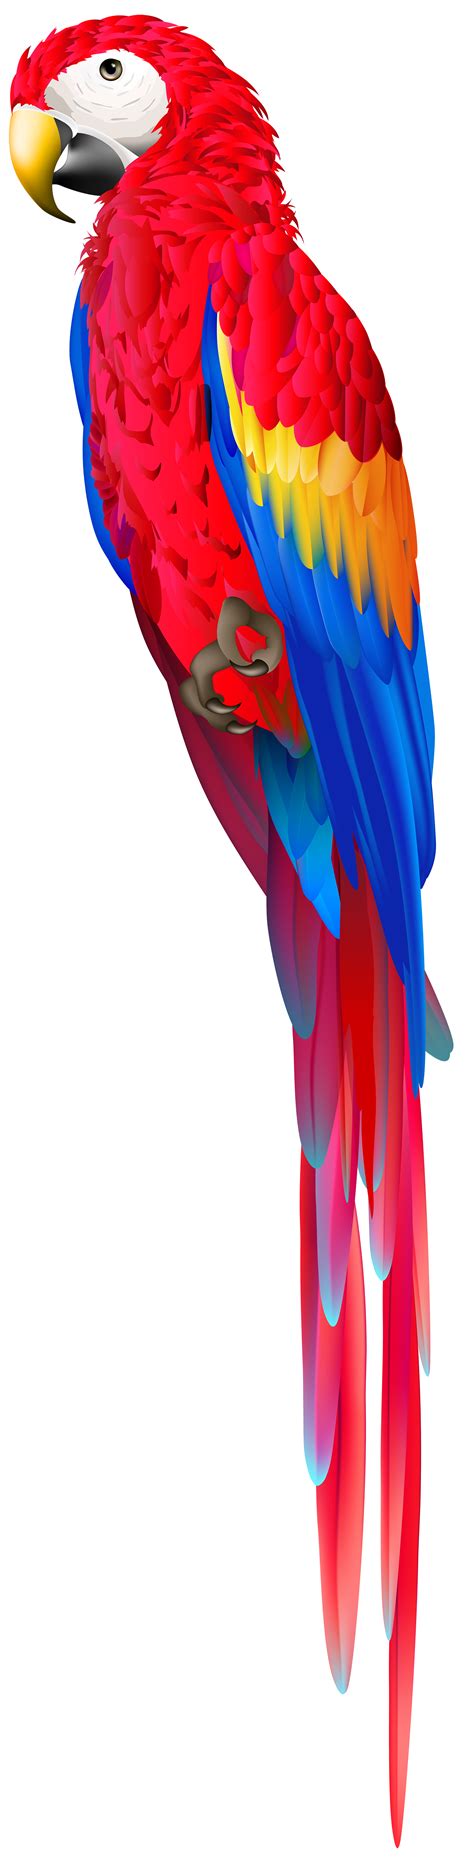 parrot clipart red parrot parrot red parrot transparent     webstockreview